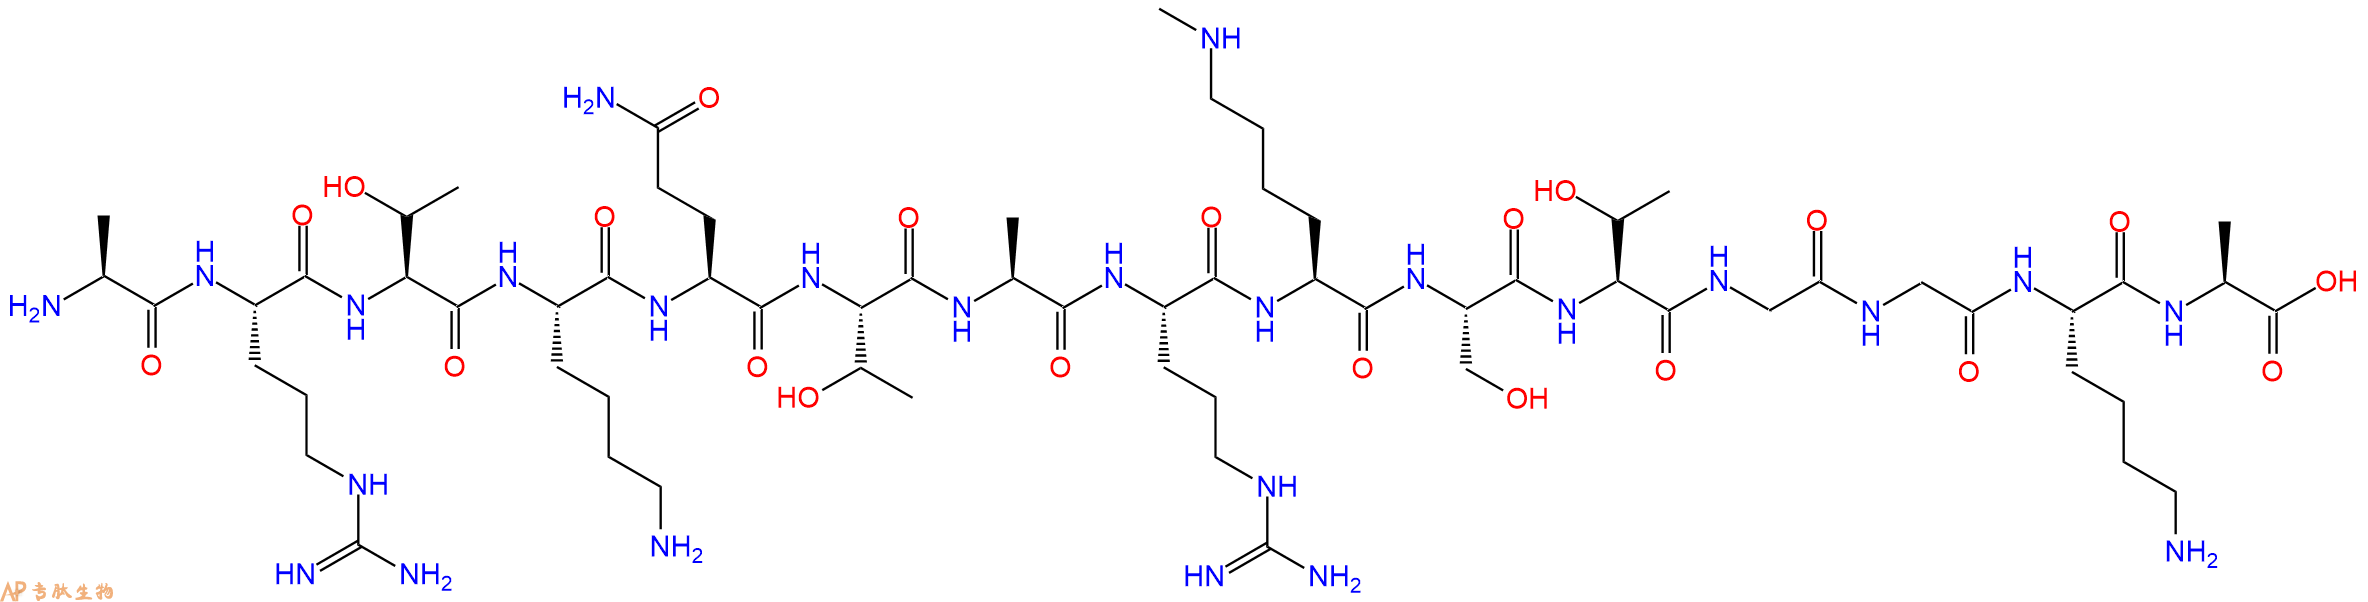 专肽生物产品组蛋白肽段Histone H3 (1-15) mono-methylated Lys9